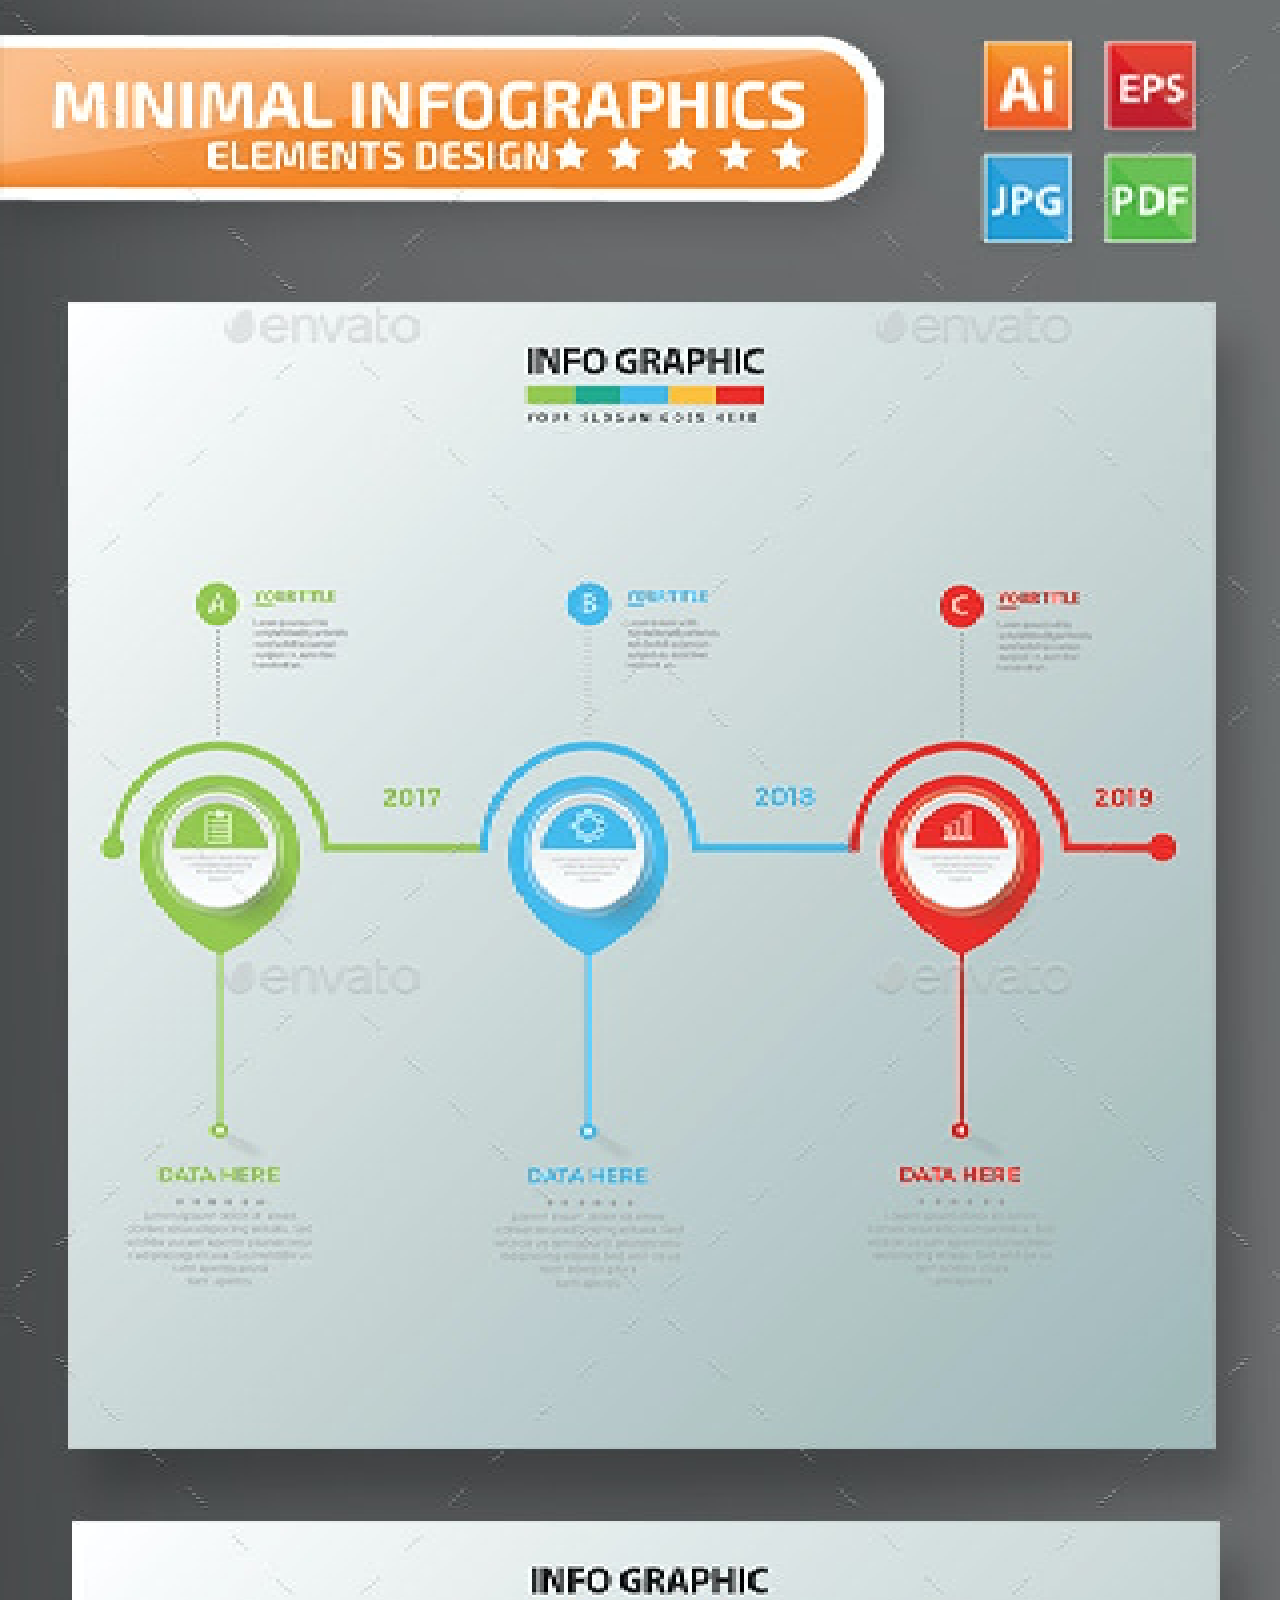 Timeline infographic design pinterest image.